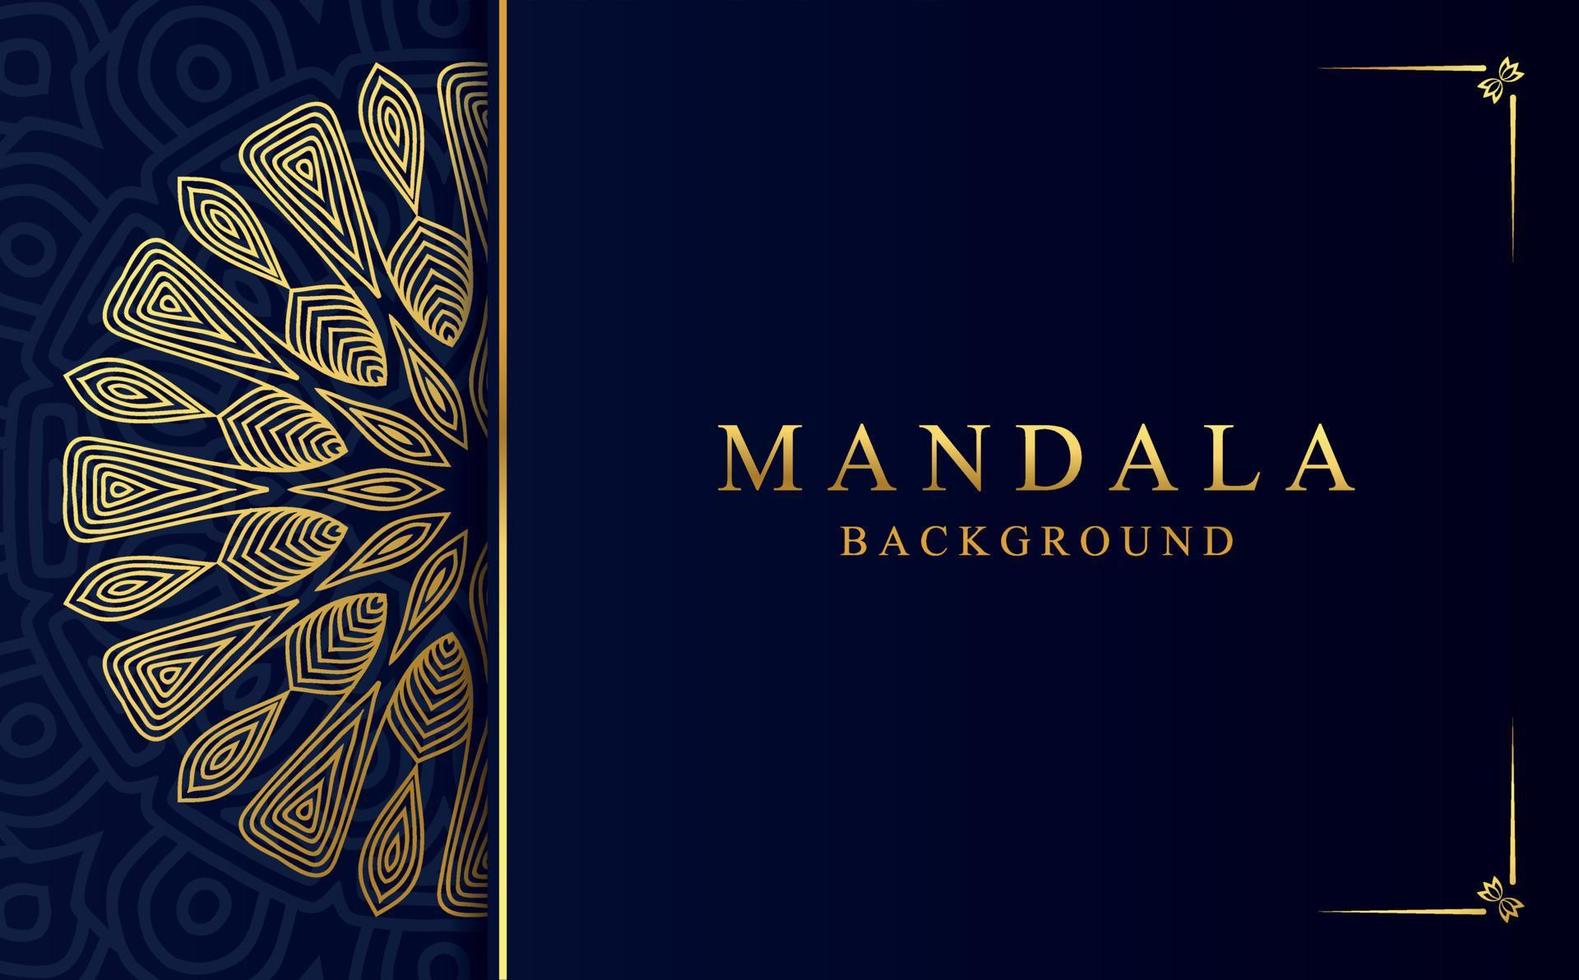 luxe gouden mandala ontwerp achtergrond in Arabisch stijl vector